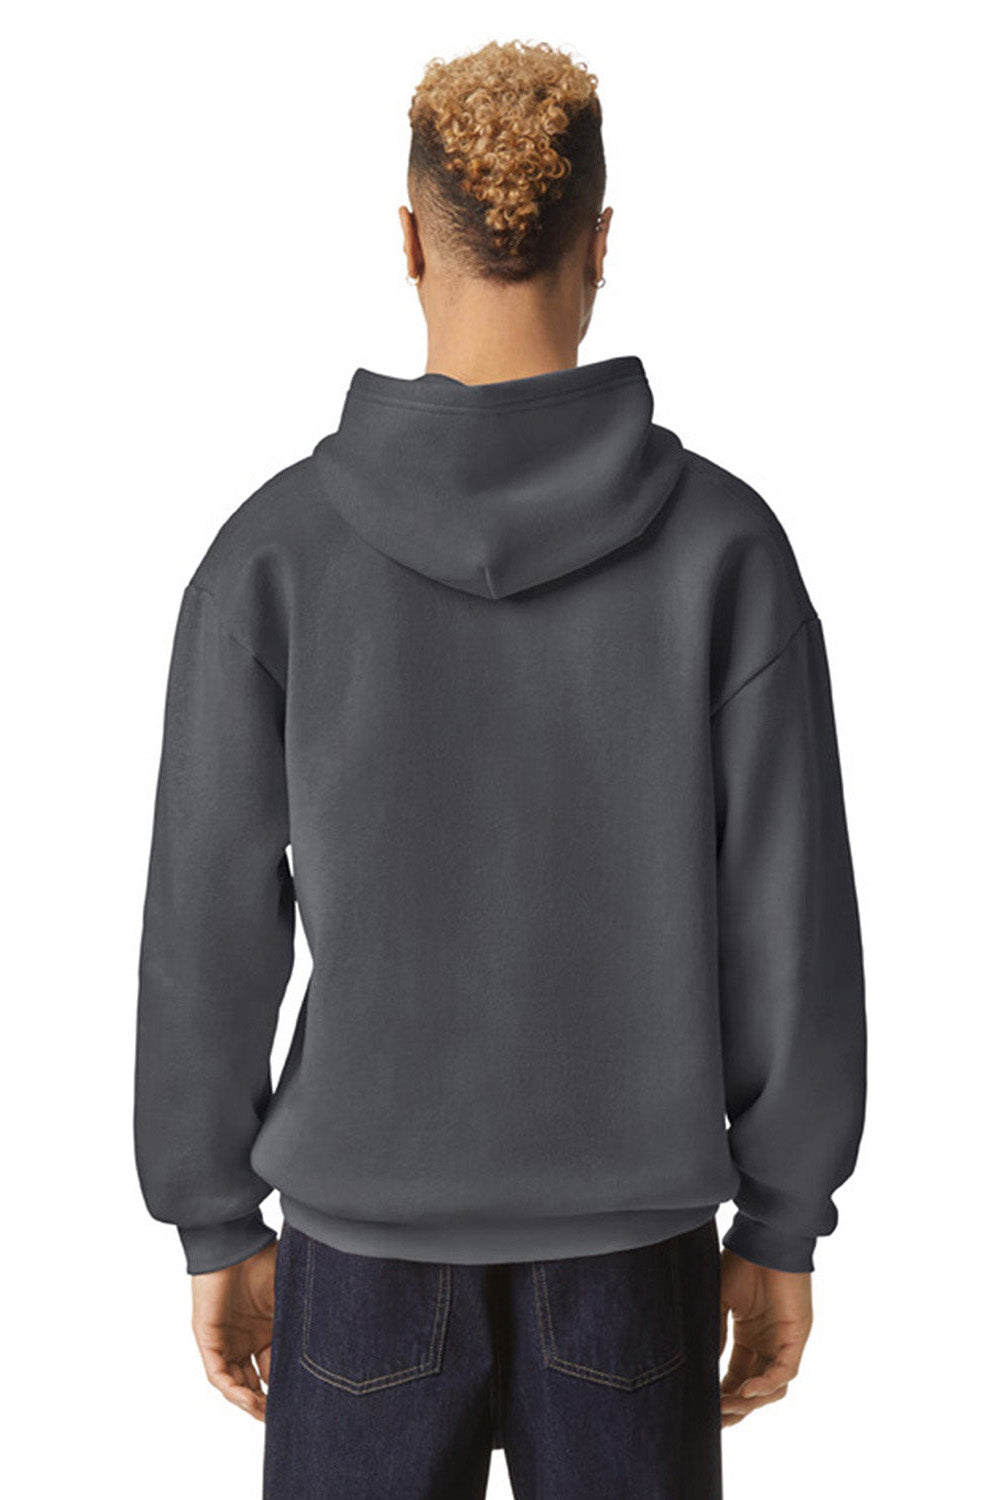 American Apparel RF498 Mens ReFlex Fleece Hooded Sweatshirt Hoodie Asphalt Model Back